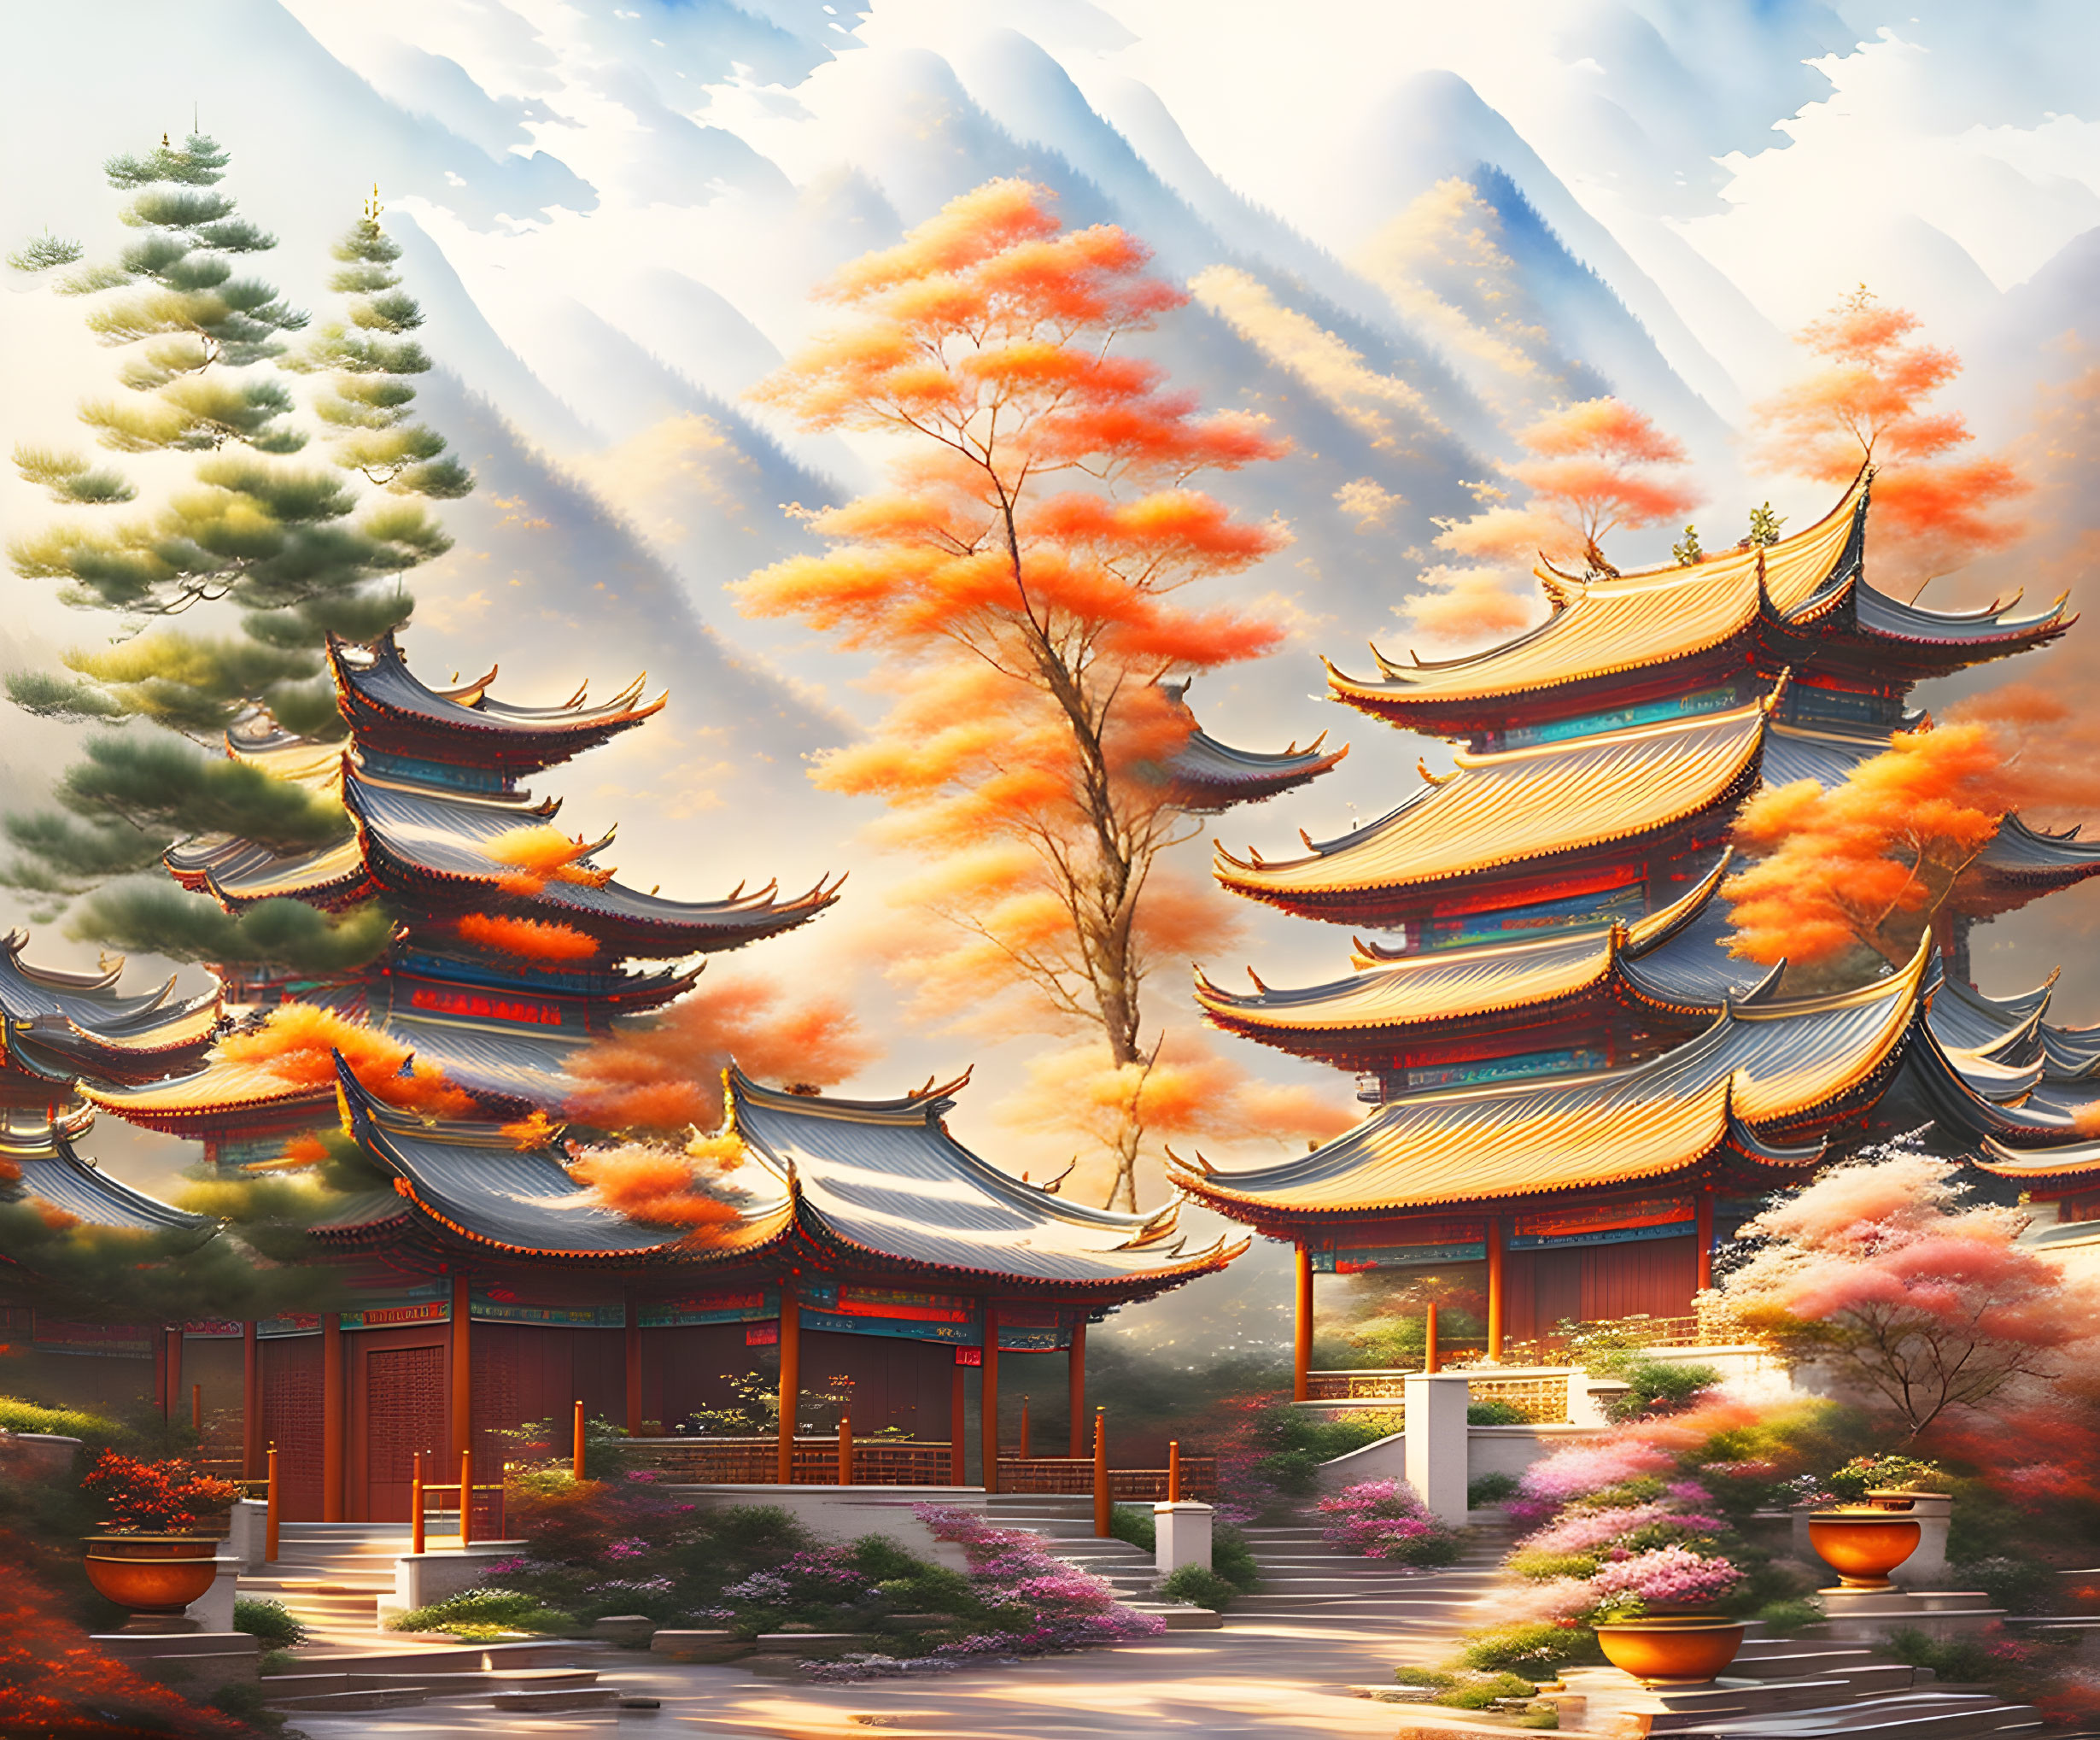 Autumn Serenity: Asian Temple & Misty Mountains